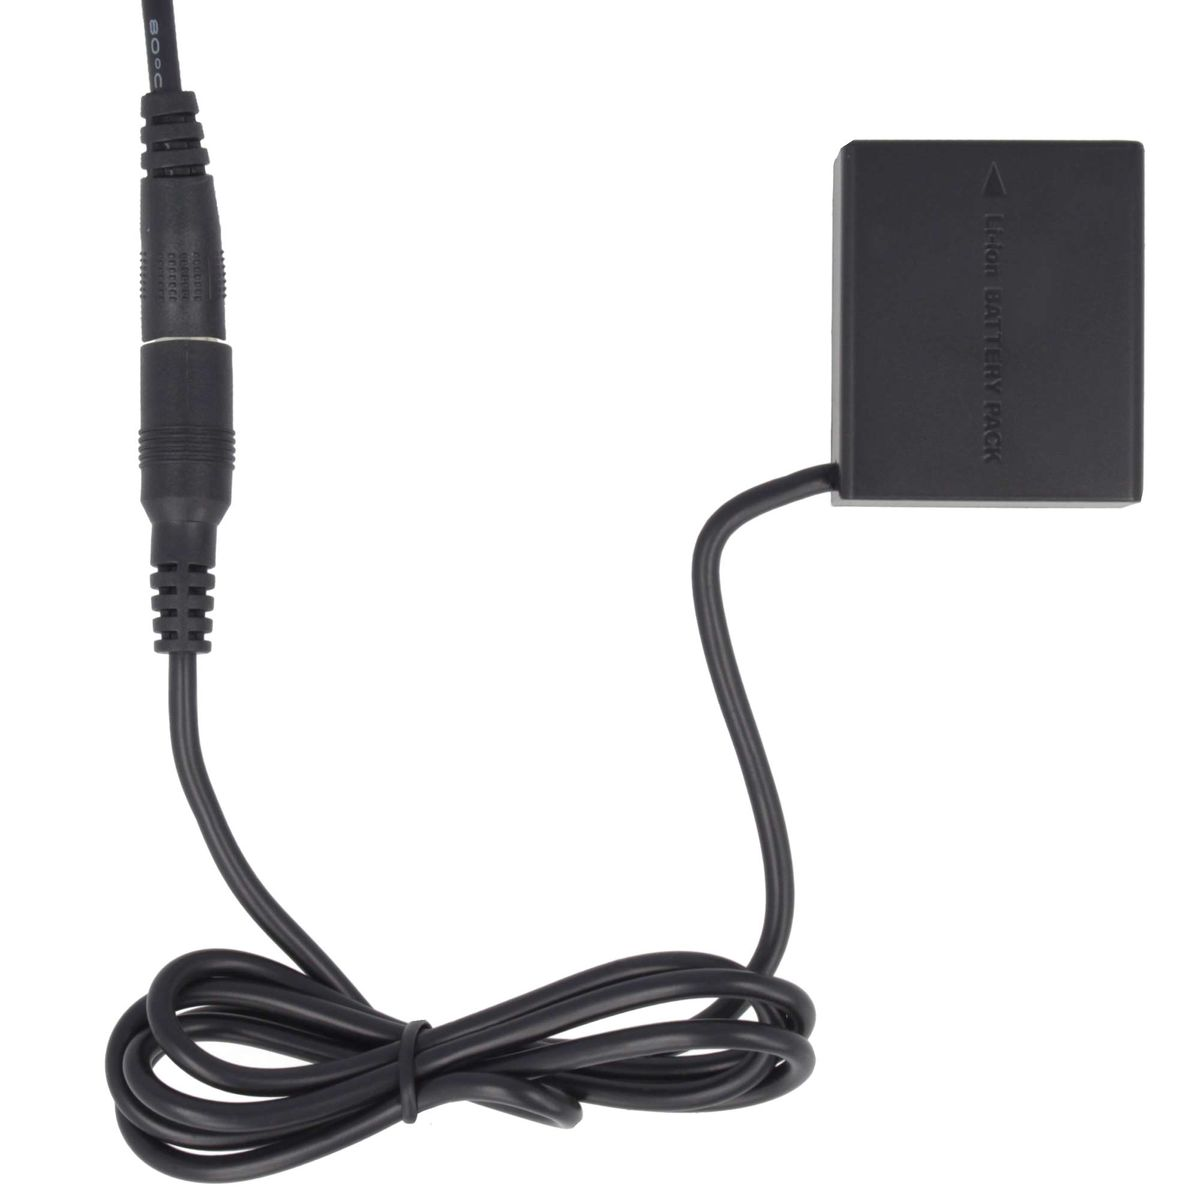 AKKU-KING USB-C Adapter + Kuppler kompatibel Angabe Panasonic Panasonic, DCC3 keine Ladegerät mit